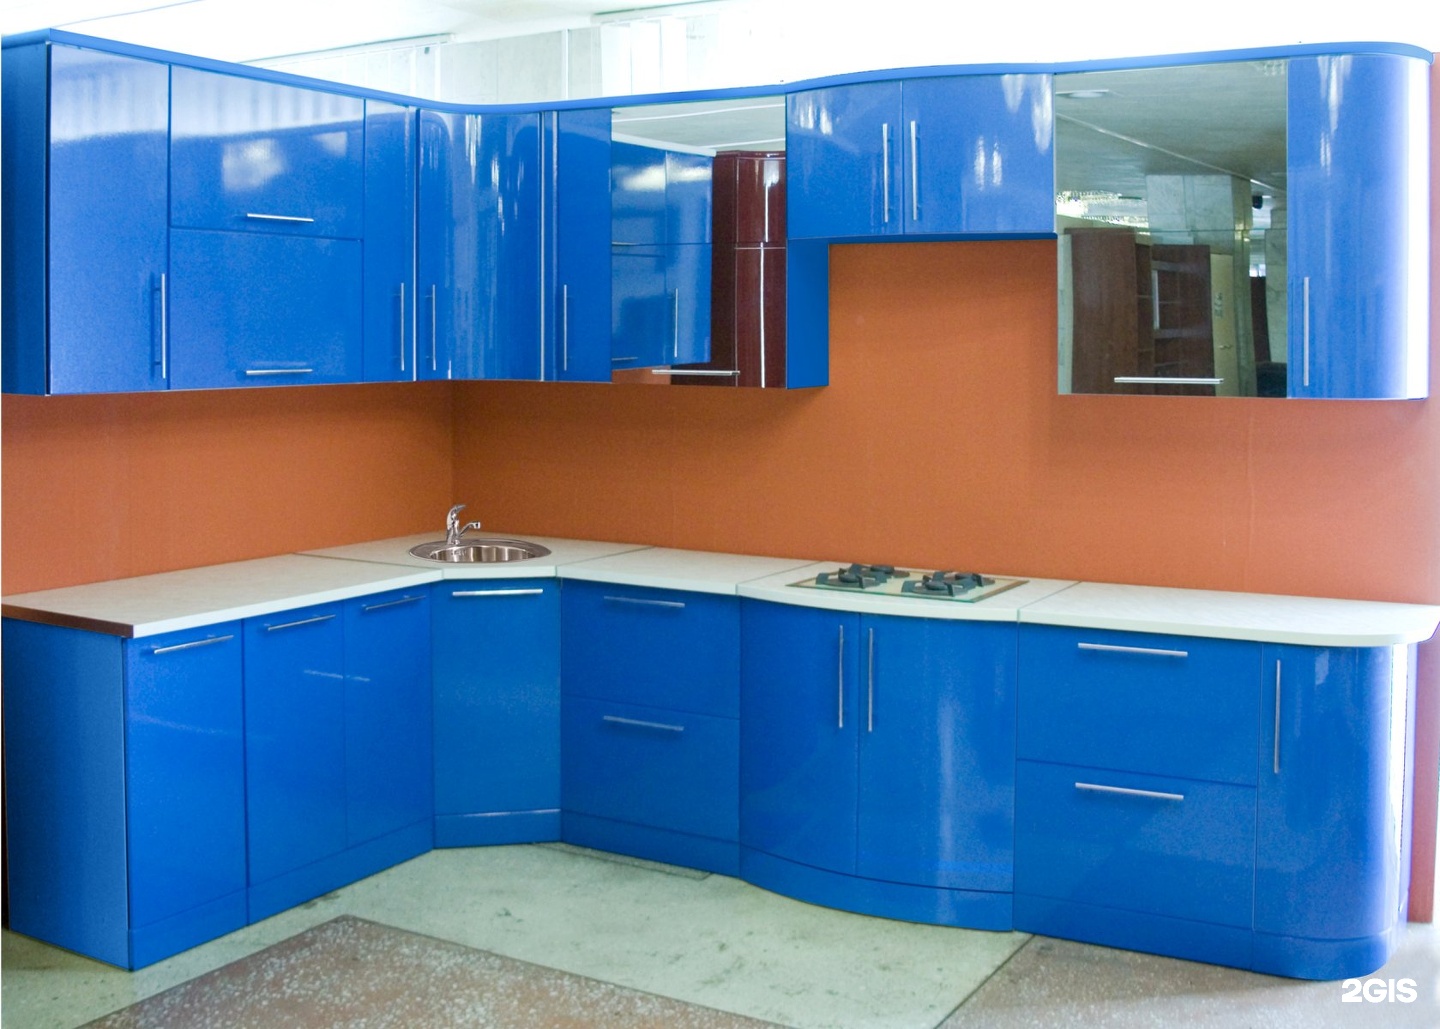 Кухнеленд магазин. Кухонный гарнитур синего цвета. Кухонный гарнитур угловой. Кухня в синем цвете. Кухня угловая синяя.